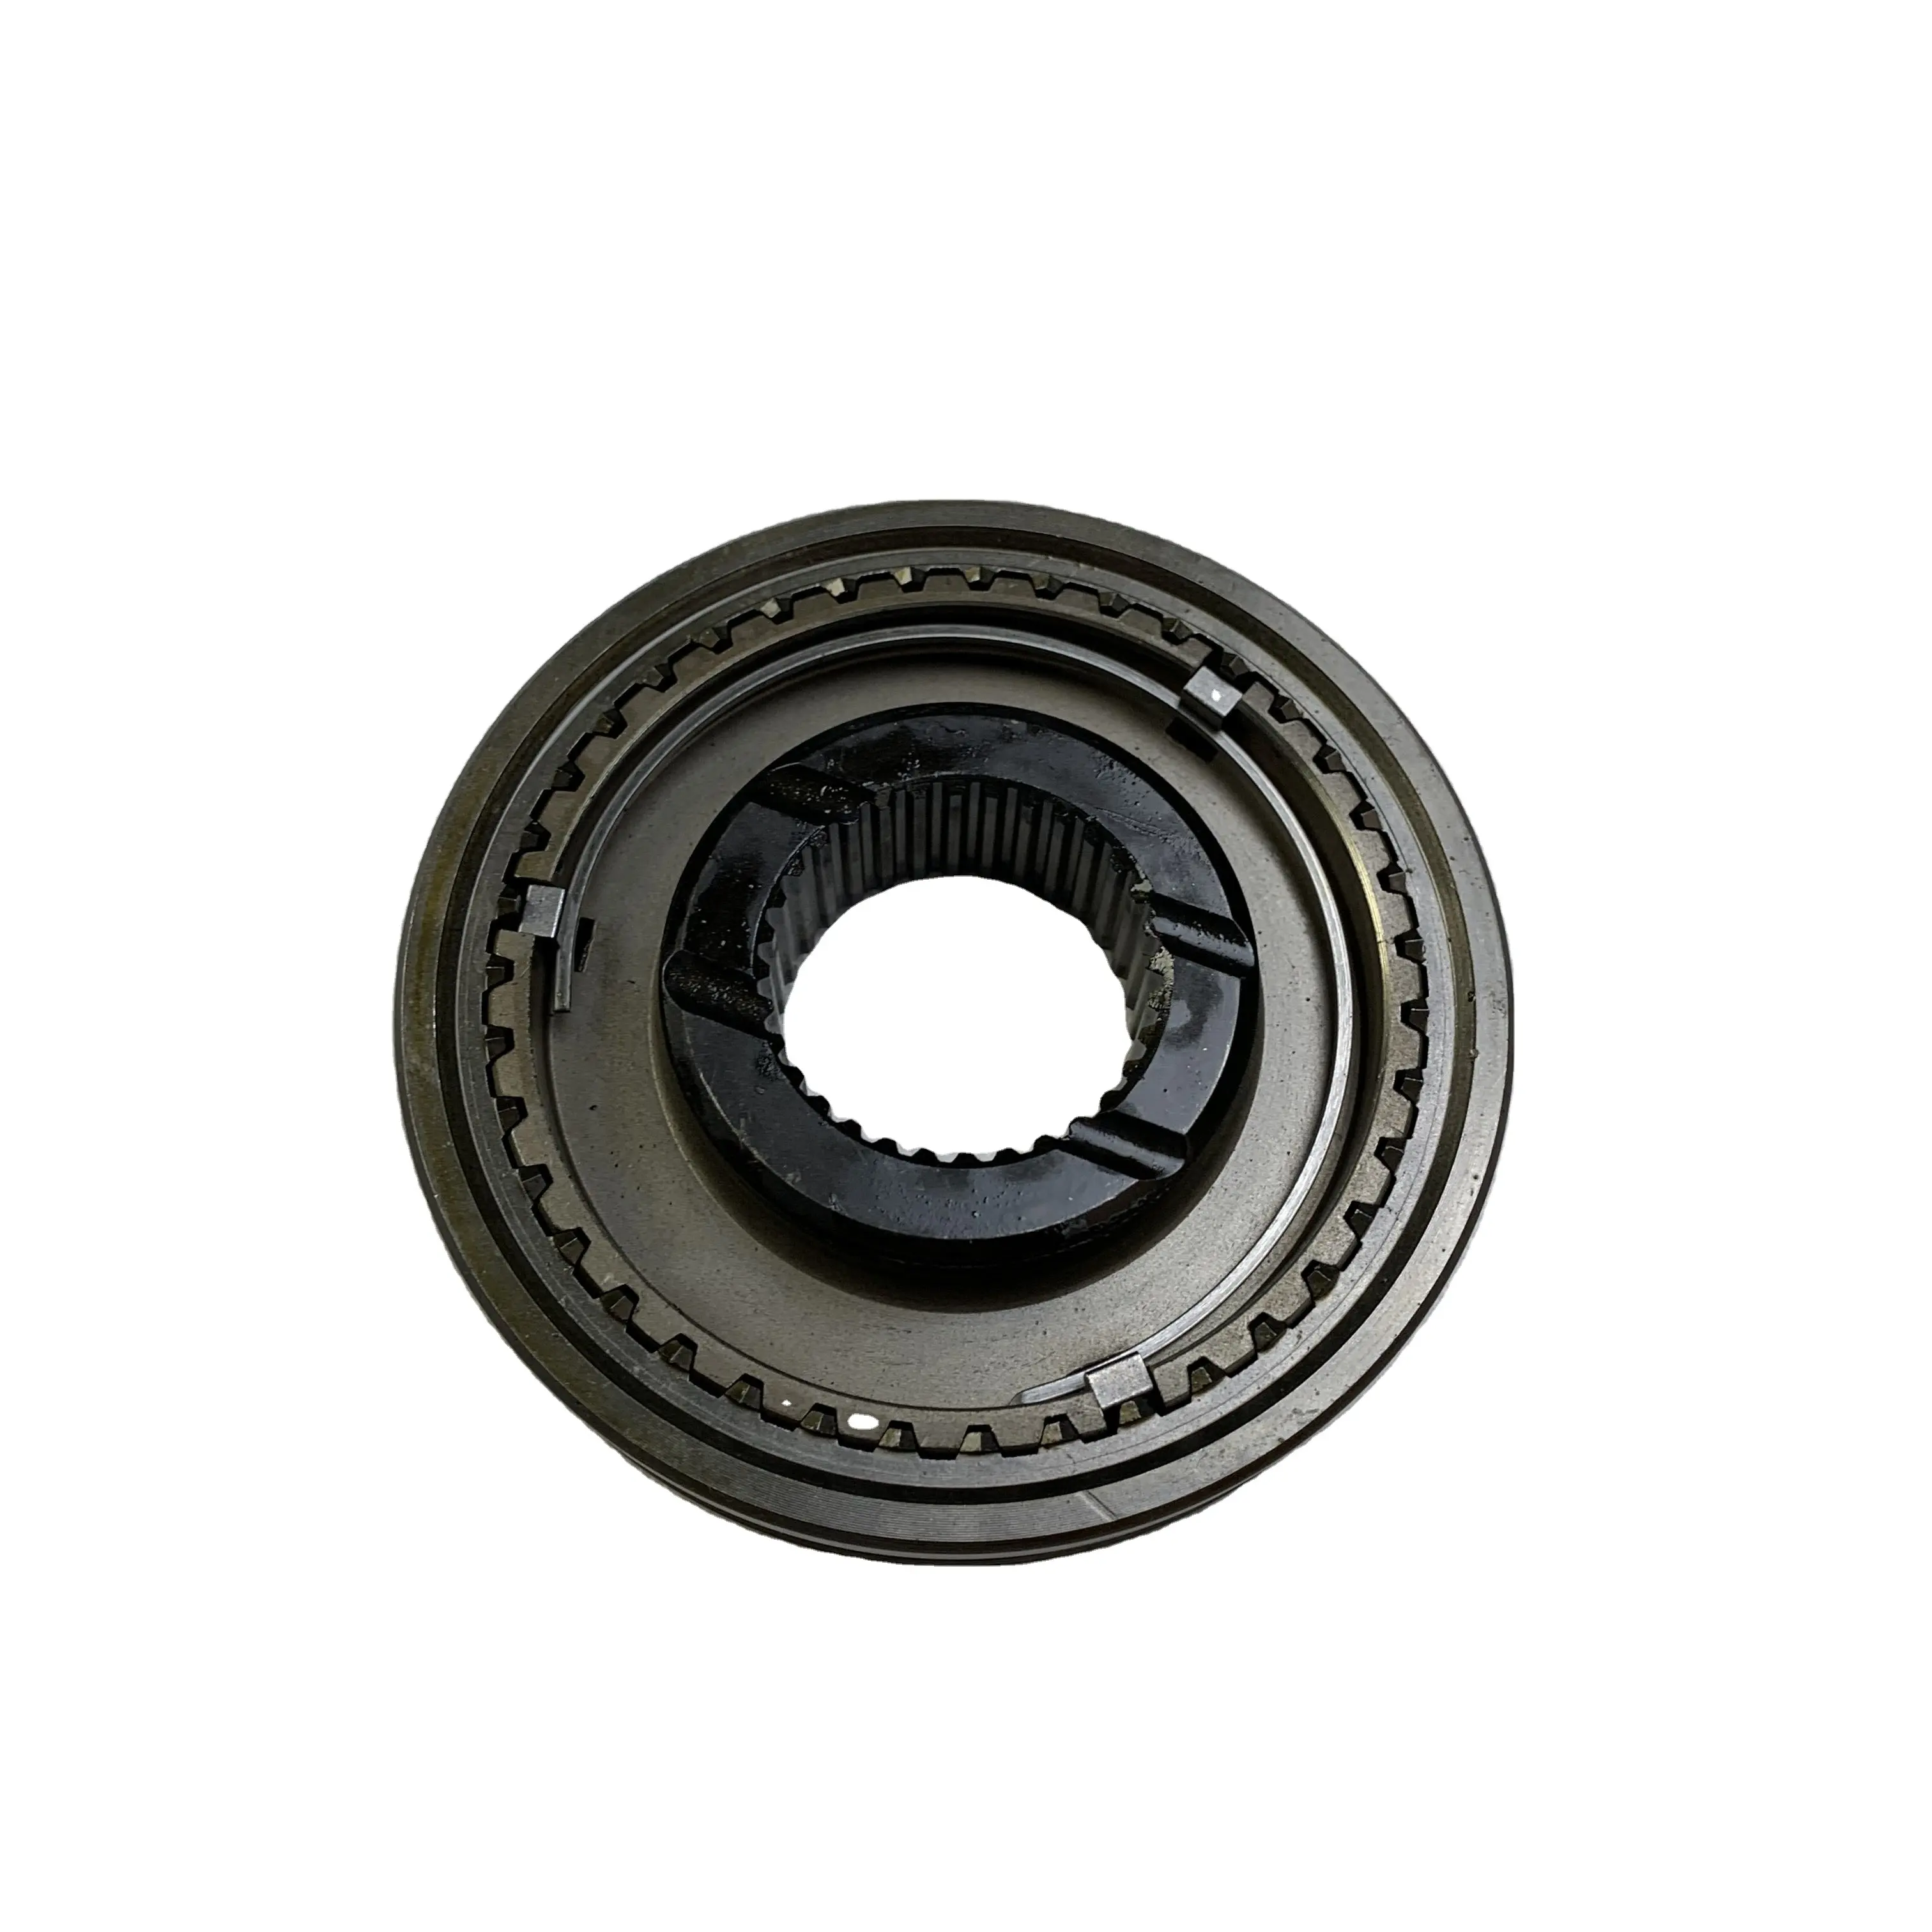 Transmission gearbox parts synchronizer gear for Mazda B2500 B2600 manual 3/4th R502-17-620C R50217620C